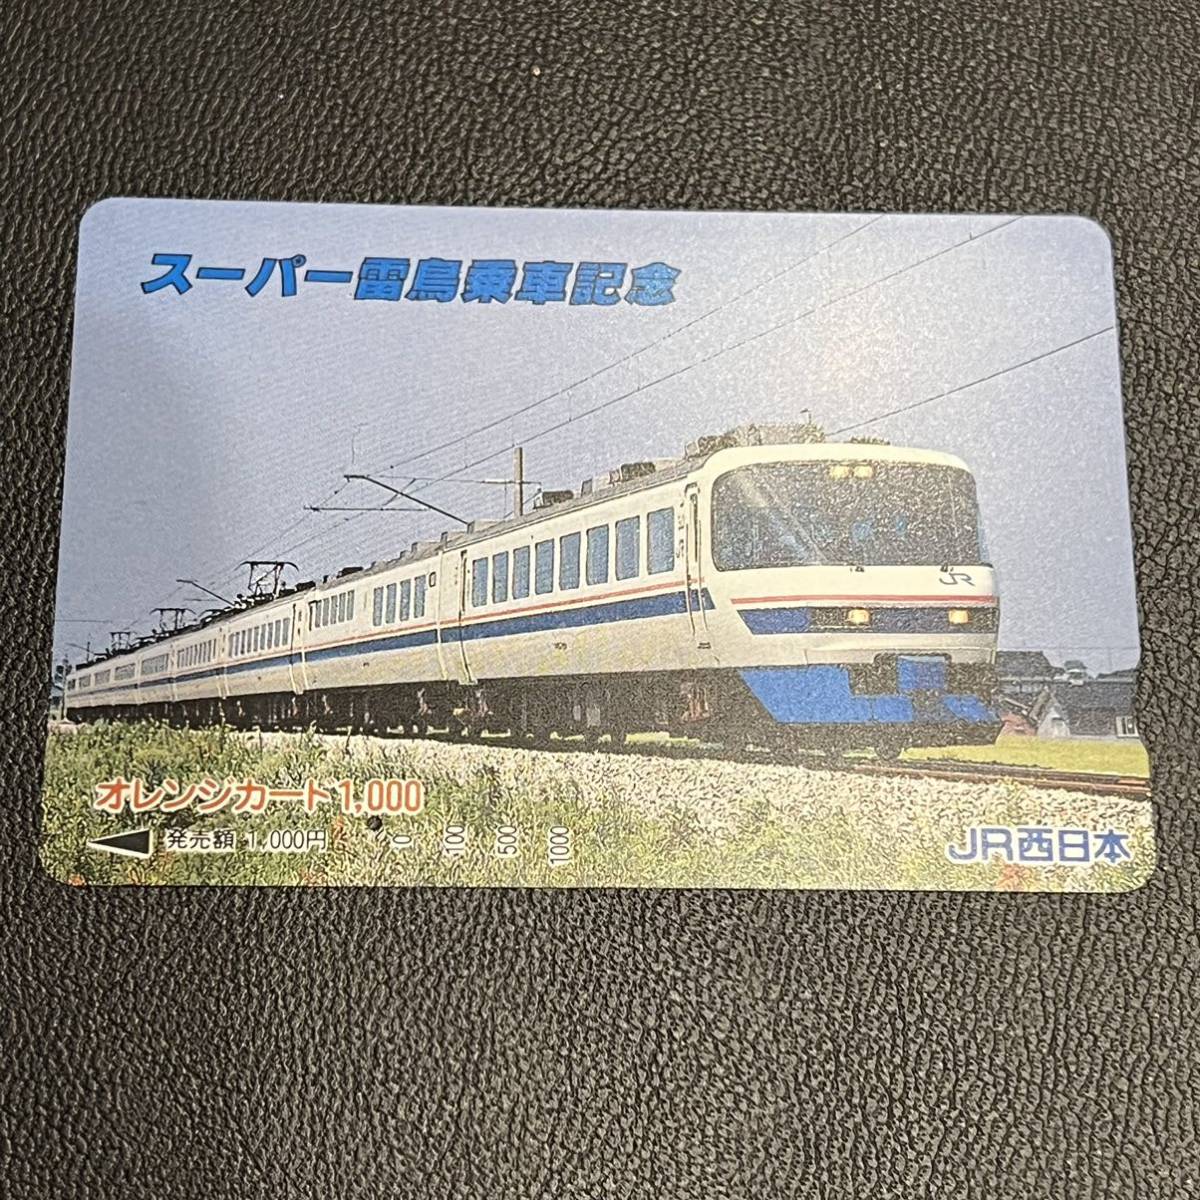 マート スーパー雷鳥乗車記念 JR西日本 オレンジカード 使用済 使用済み 1991年 国鉄485系車両